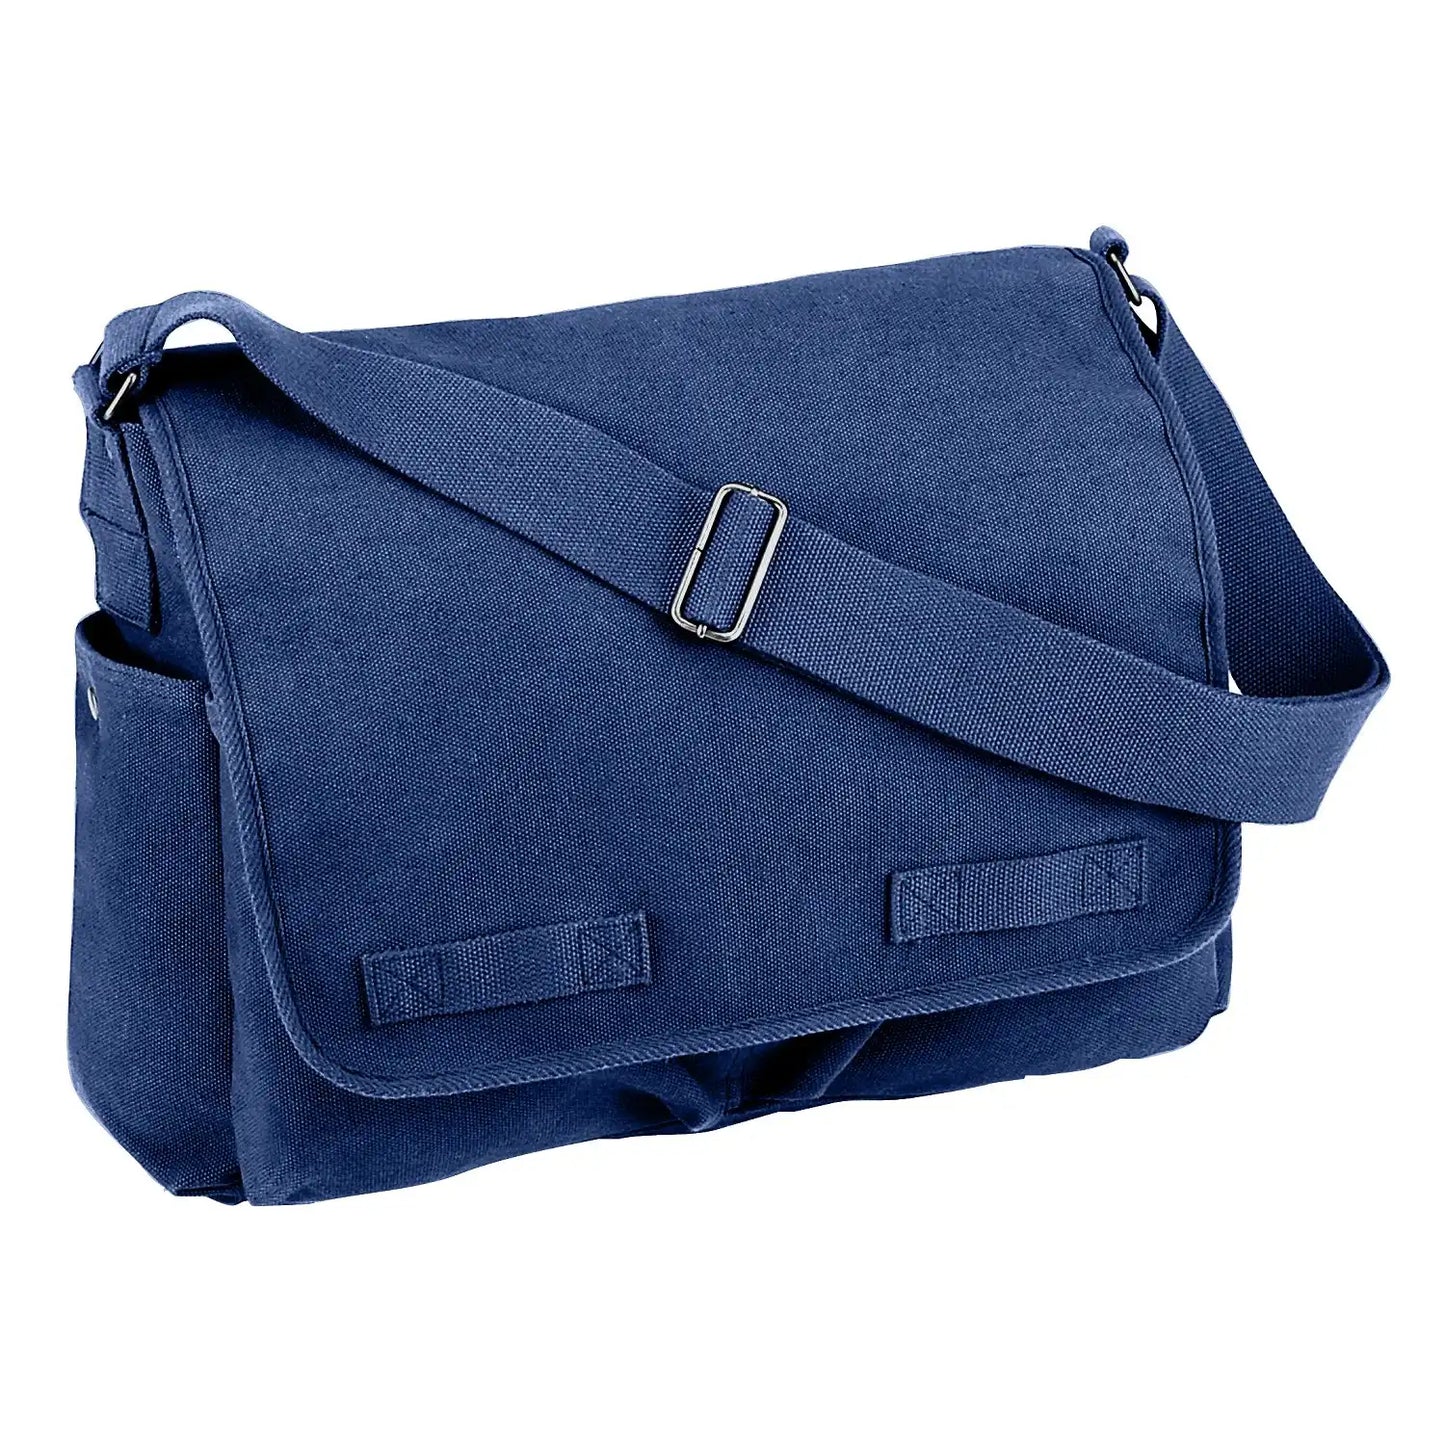 Vintage Washed Canvas Messenger Bag, Adjustable Shoulder Strap, Navy Blue